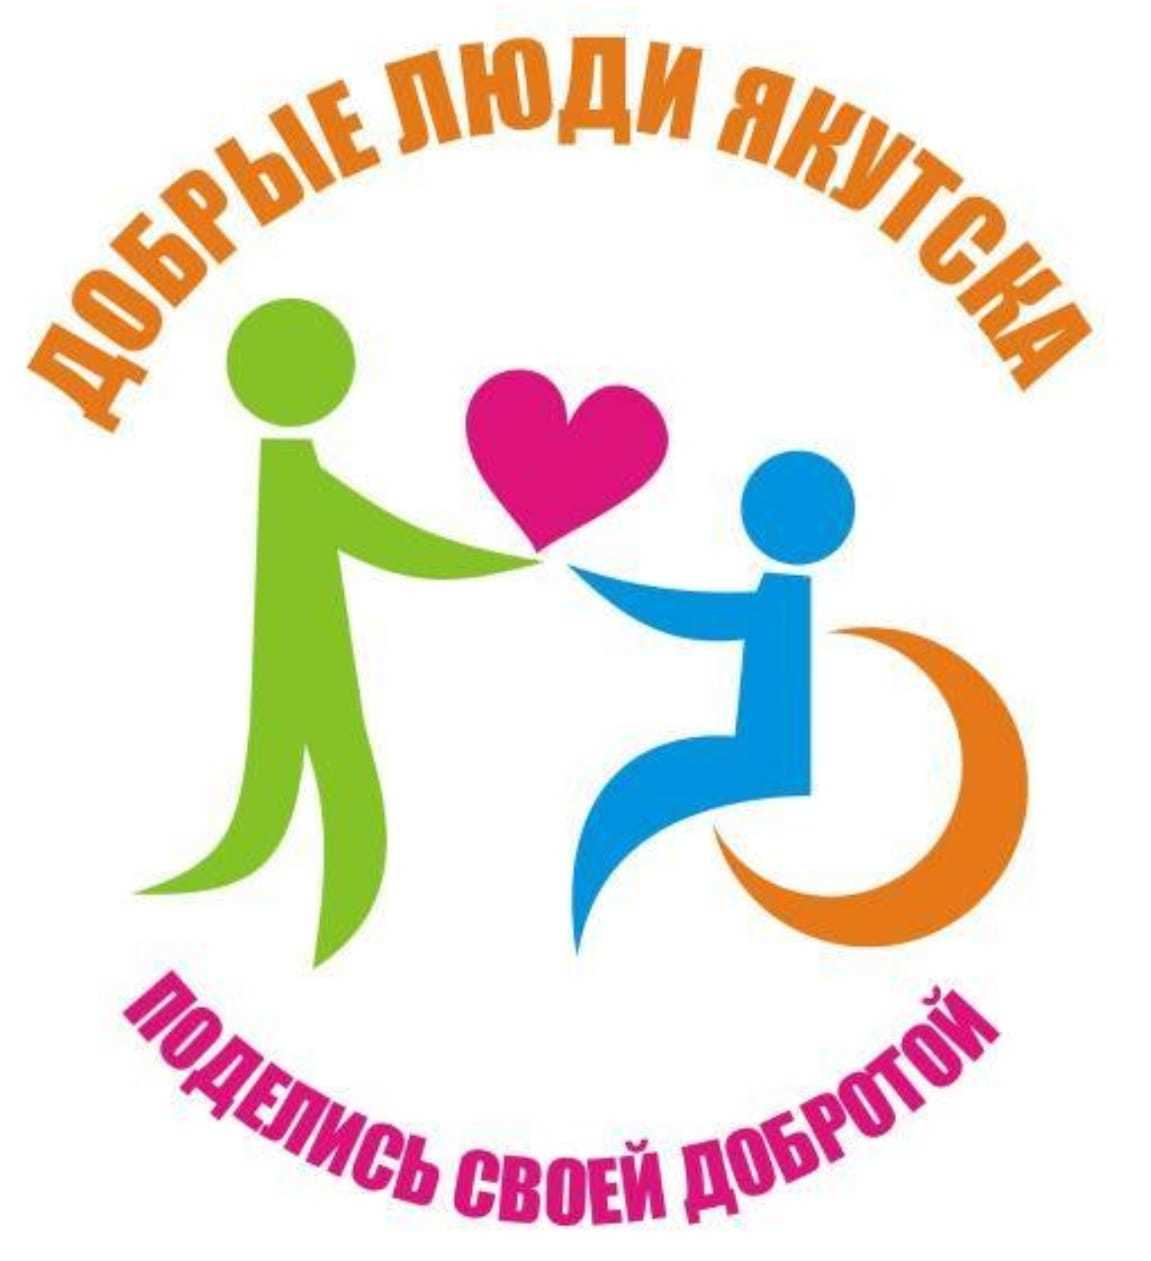 Проект "Добрые люди Якутска" объявляет сбор благотворительной помощи для пострадавших от наводнения в Амгинском районе